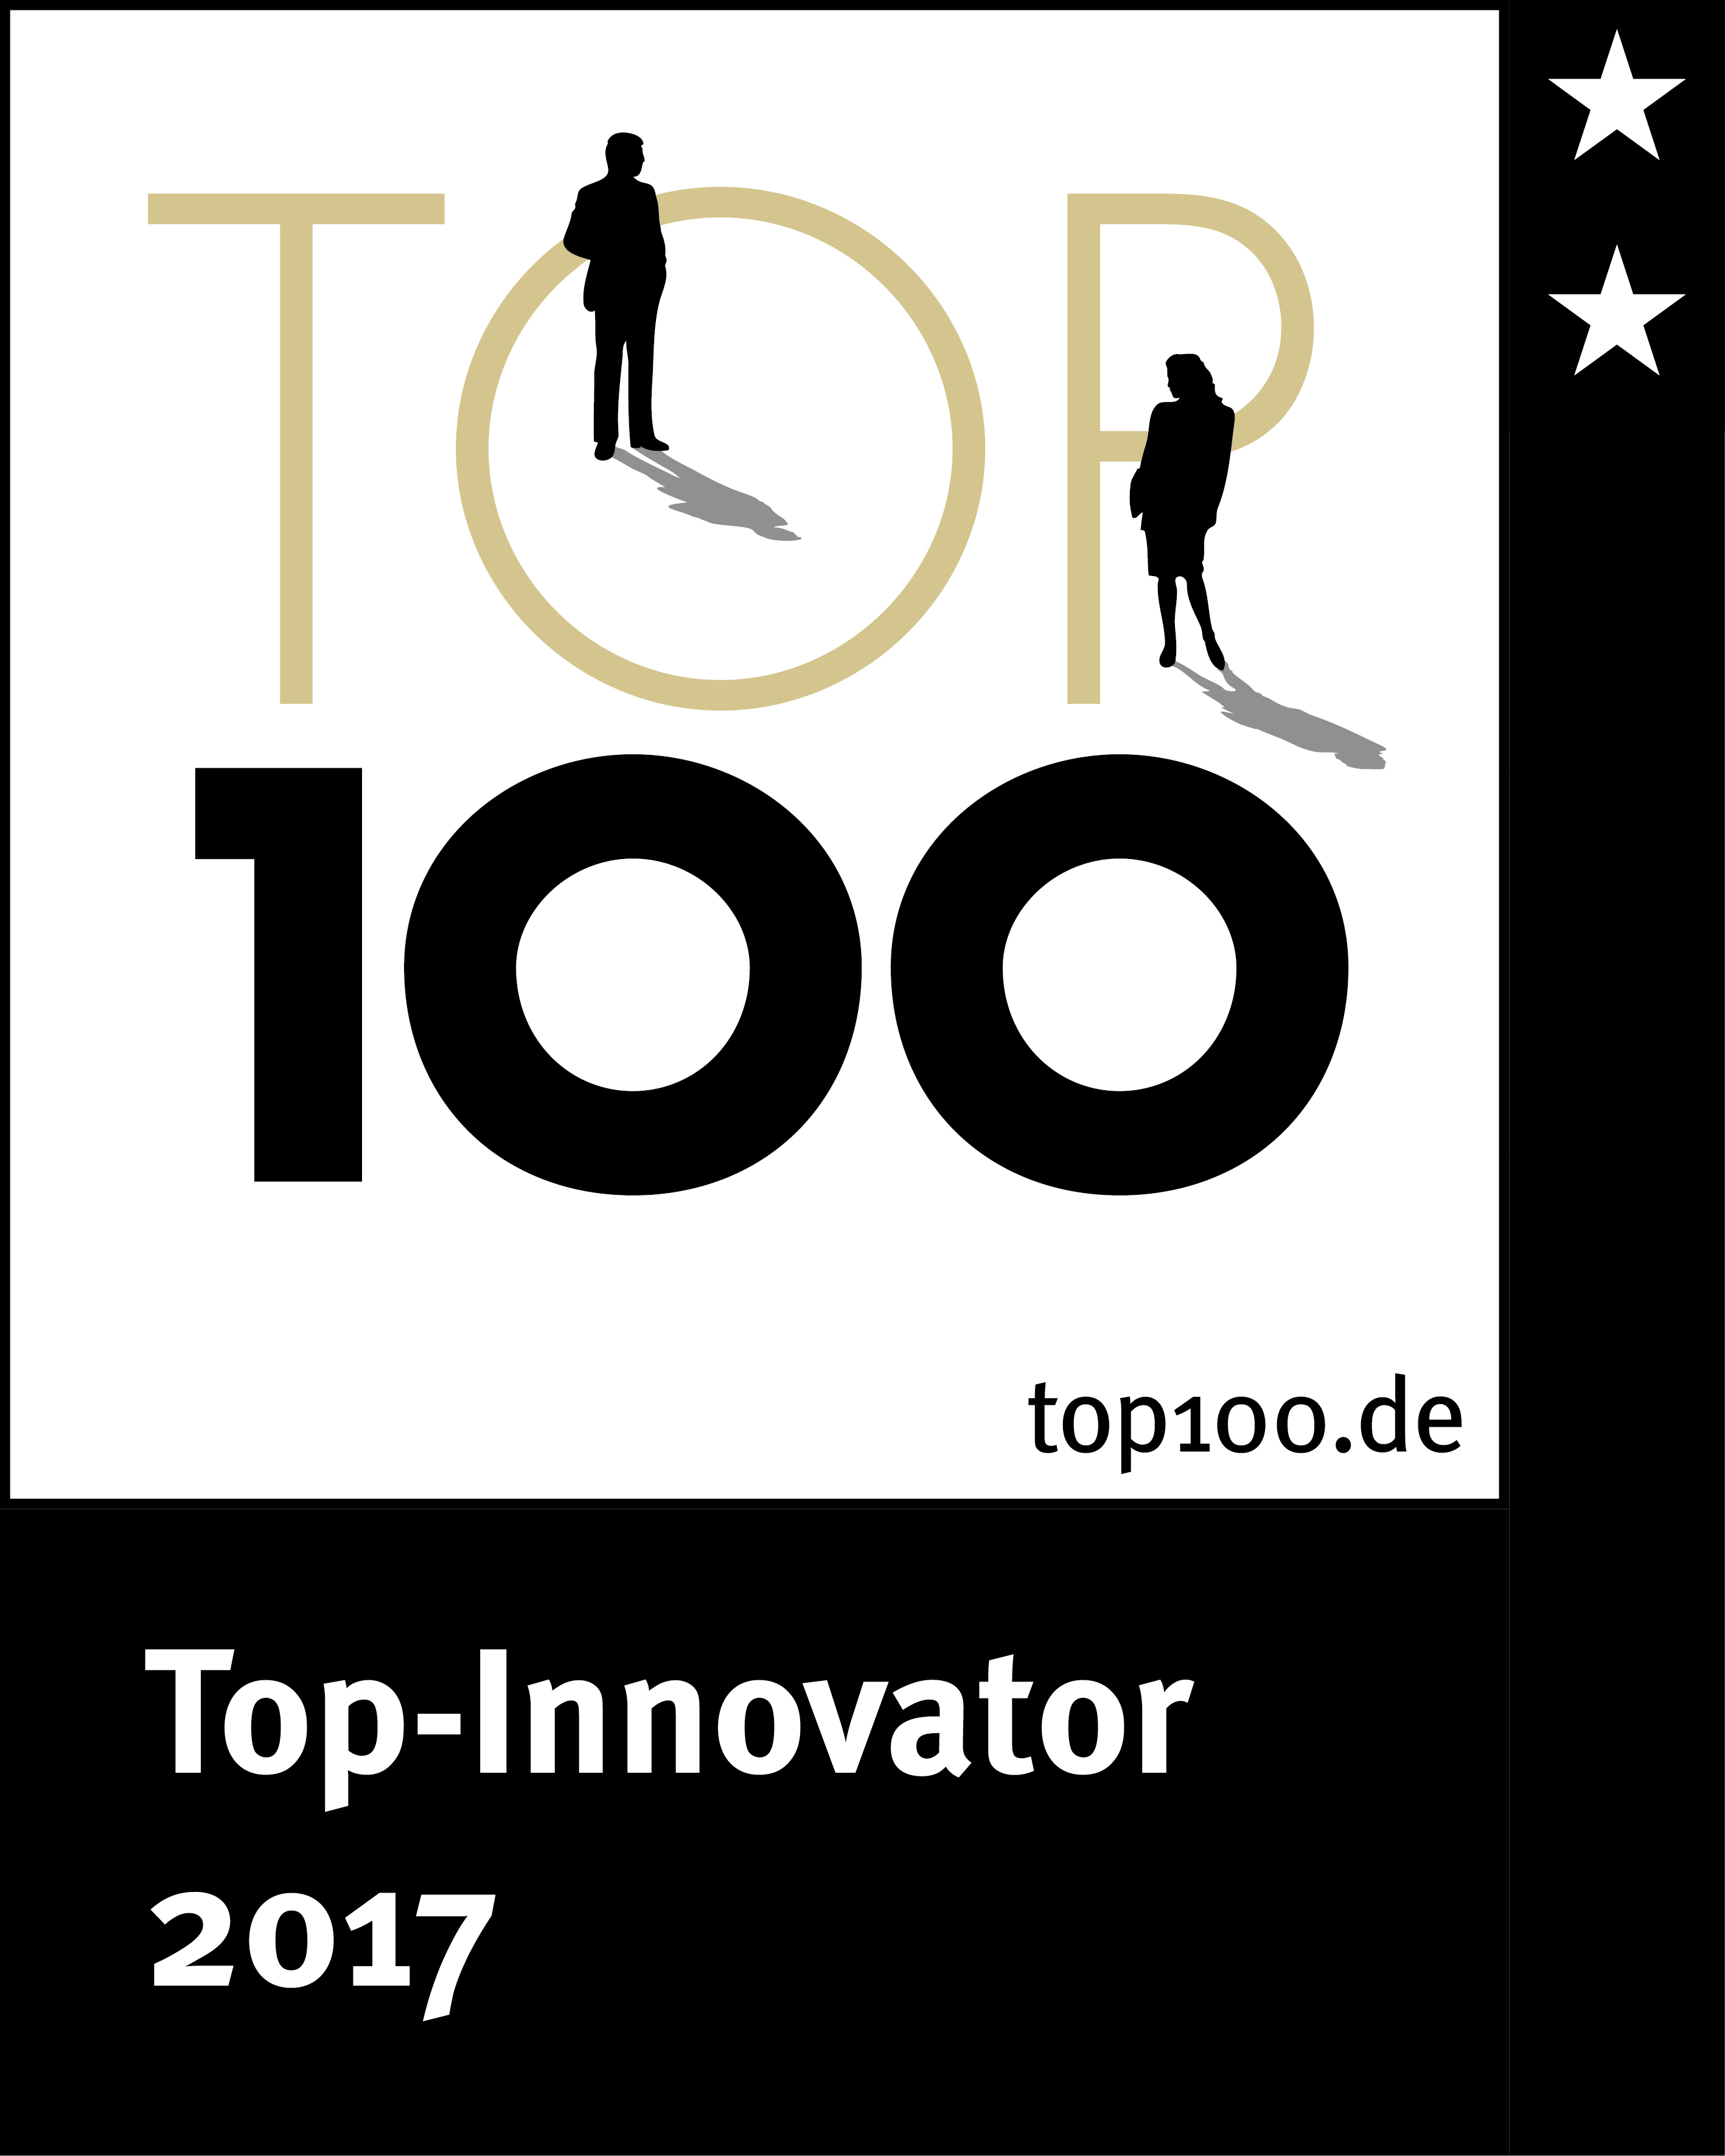 HOF - TOP100 in 2017